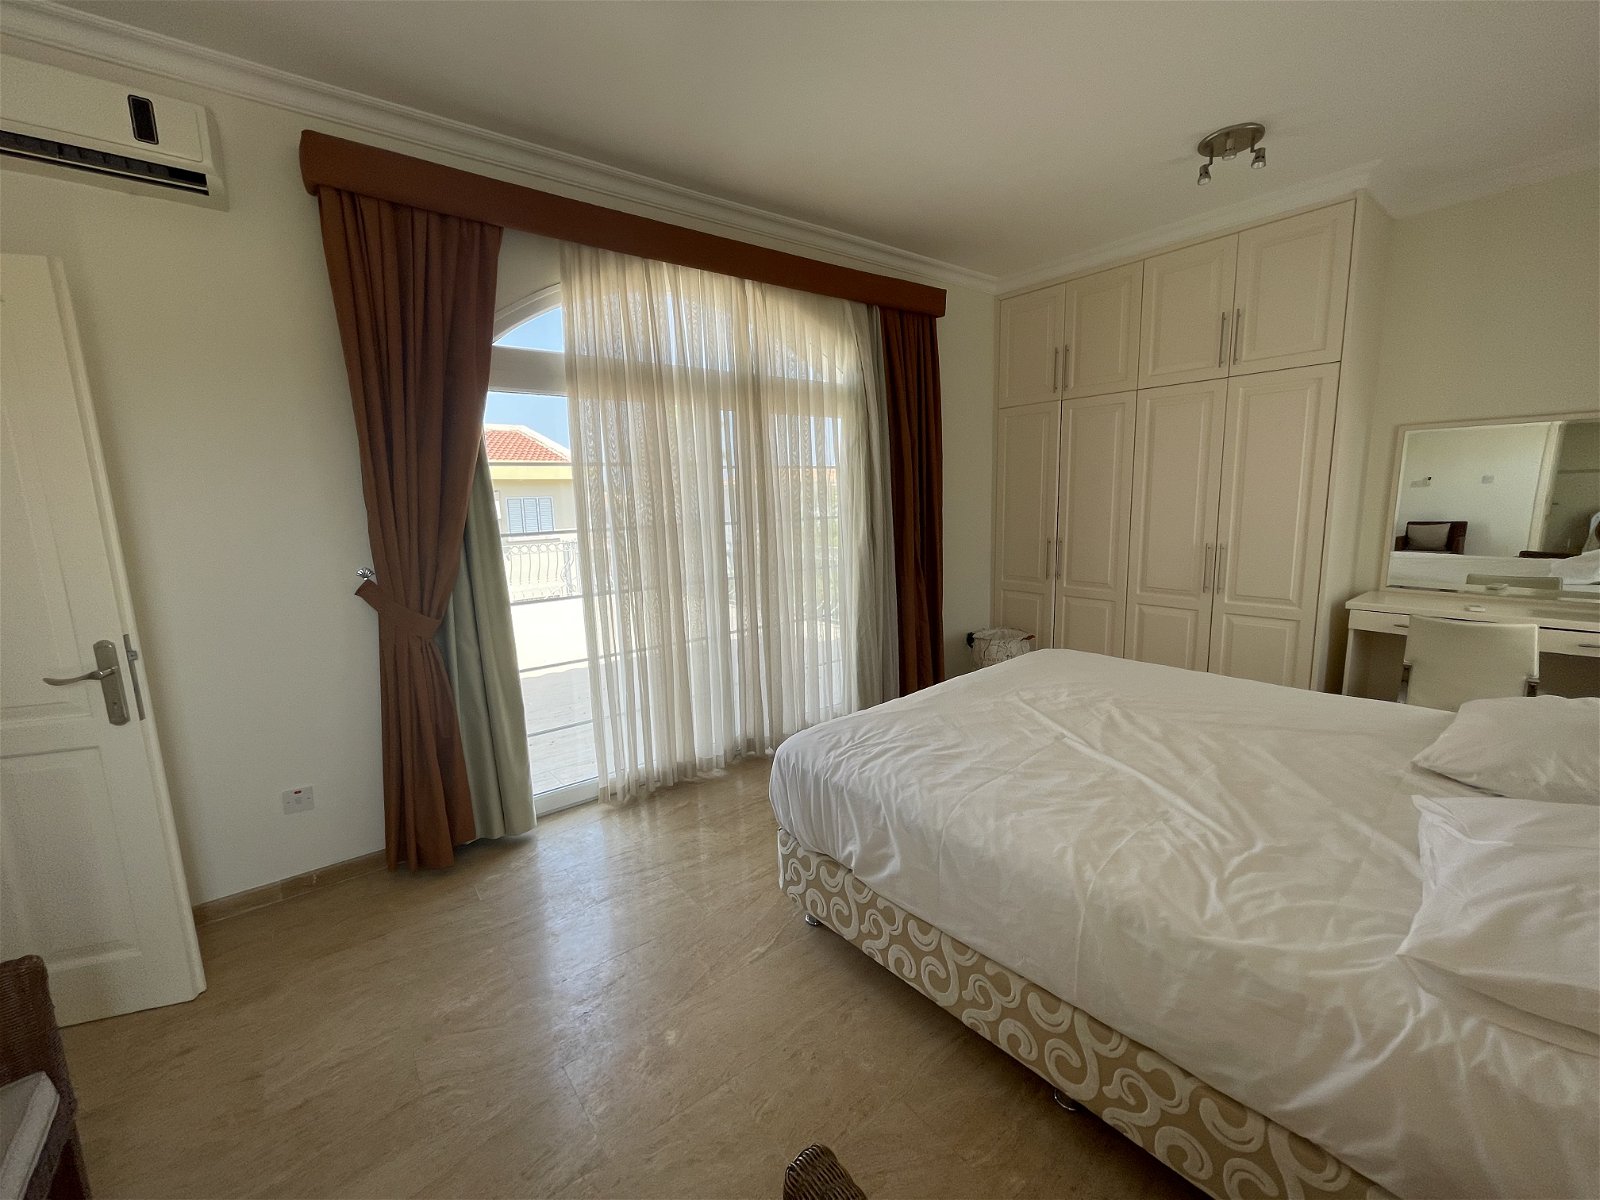 For Sale 3 +1 Turkish Deeded Villa in Karaoglanoglu Kyrenia-bcde1efe-412a-47ac-90ce-53dae211a86b